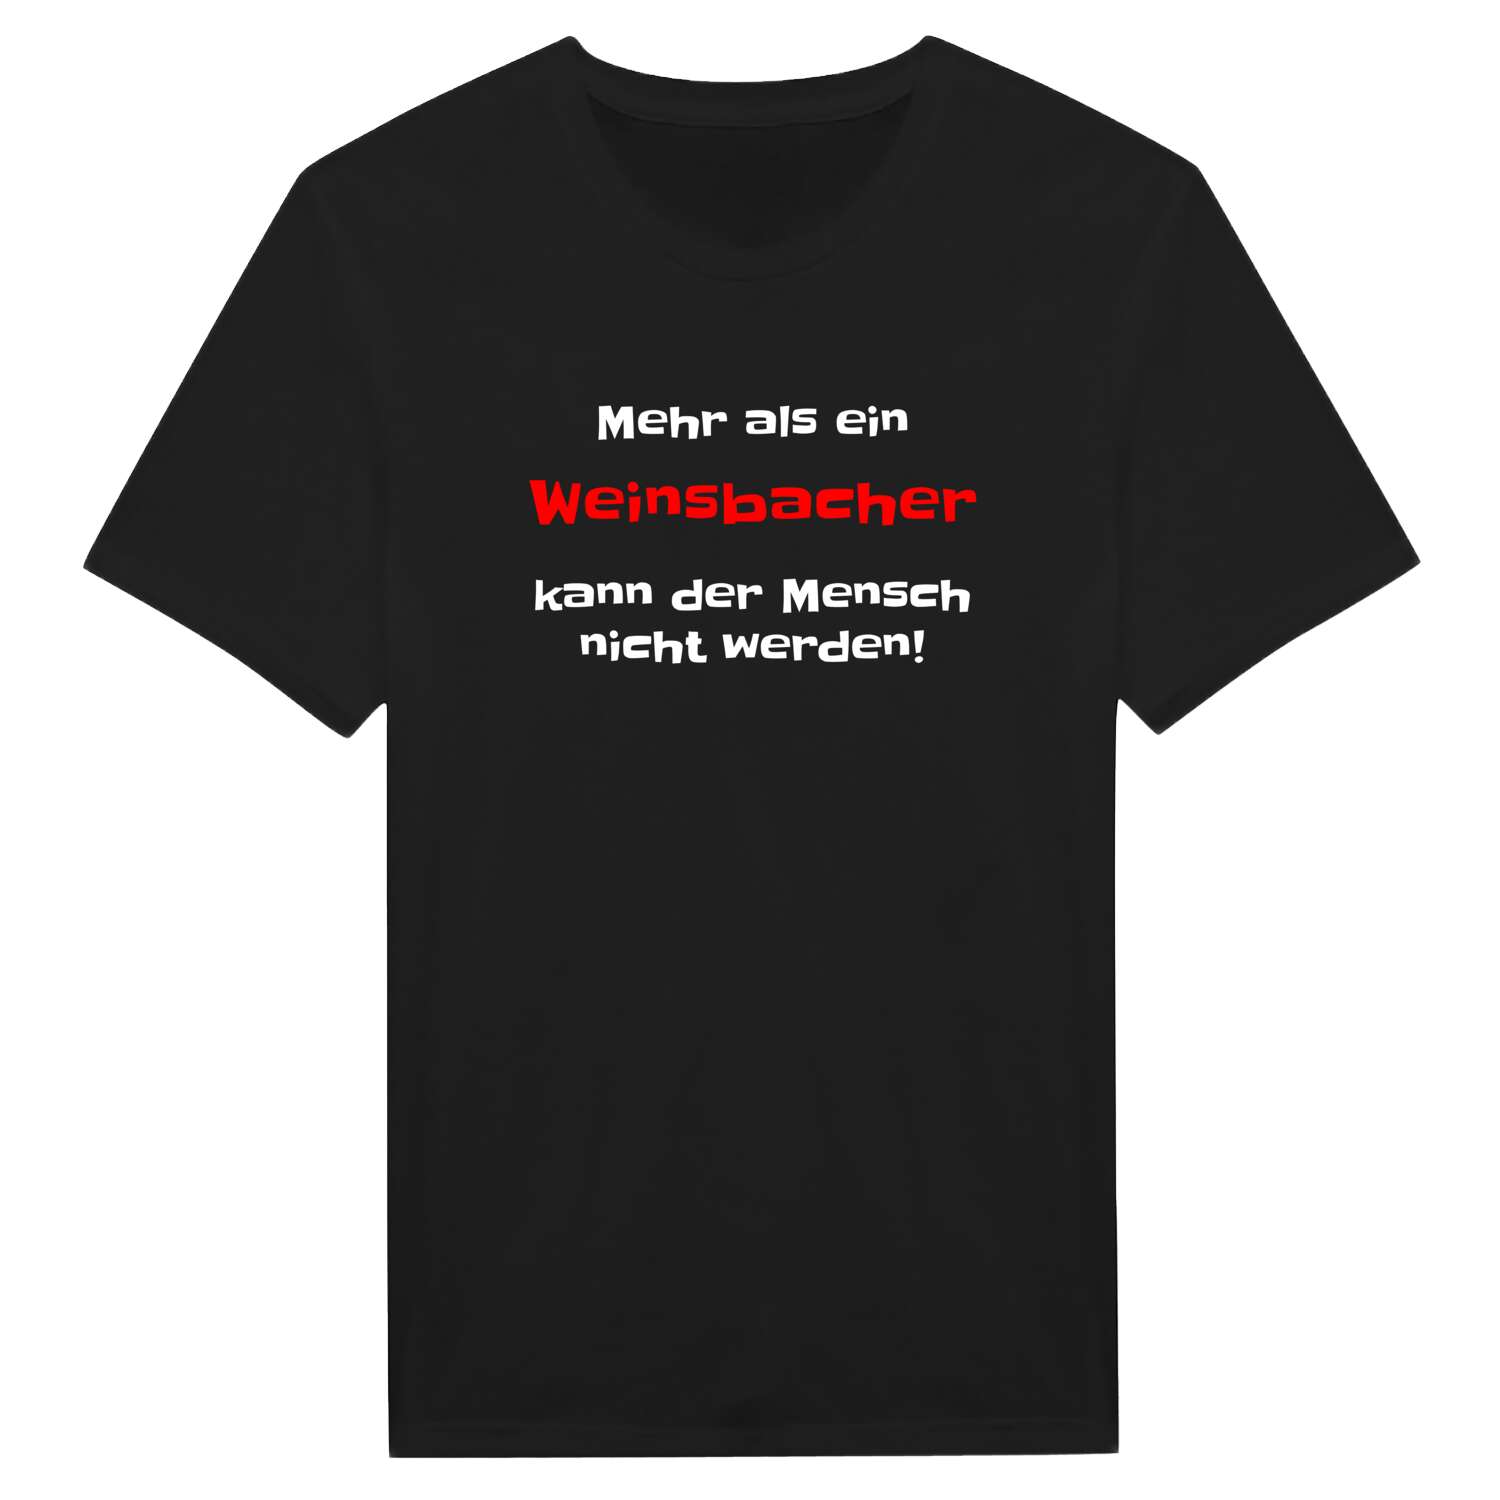 Weinsbach T-Shirt »Mehr als ein«